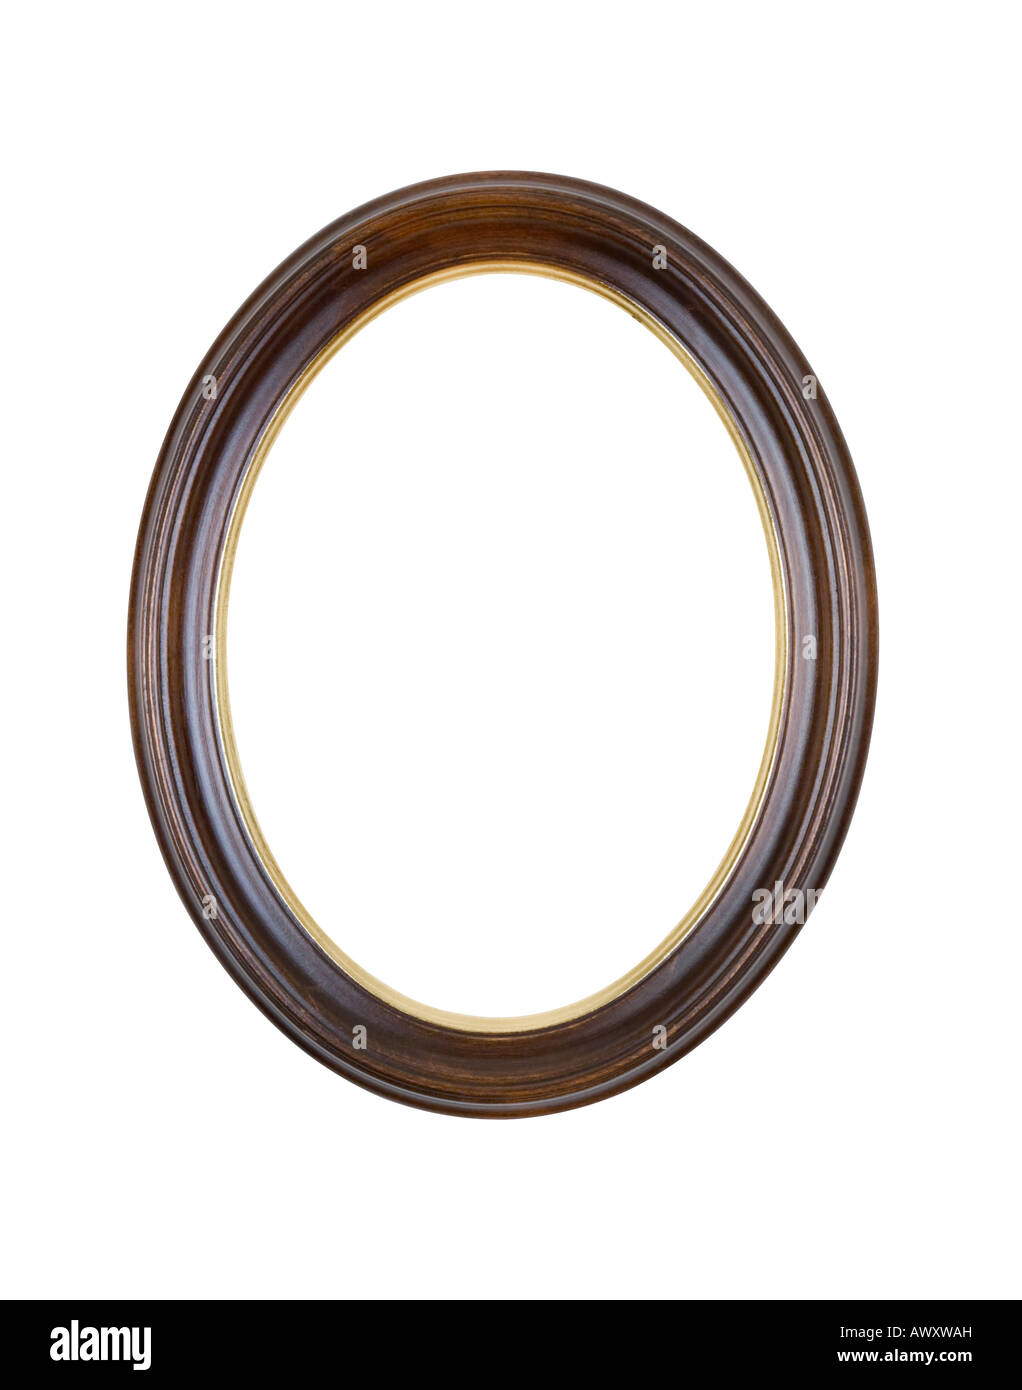 Ovale cadre photo en bois marron, tache irrégulière et finition laque, isolé sur fond blanc. Banque D'Images